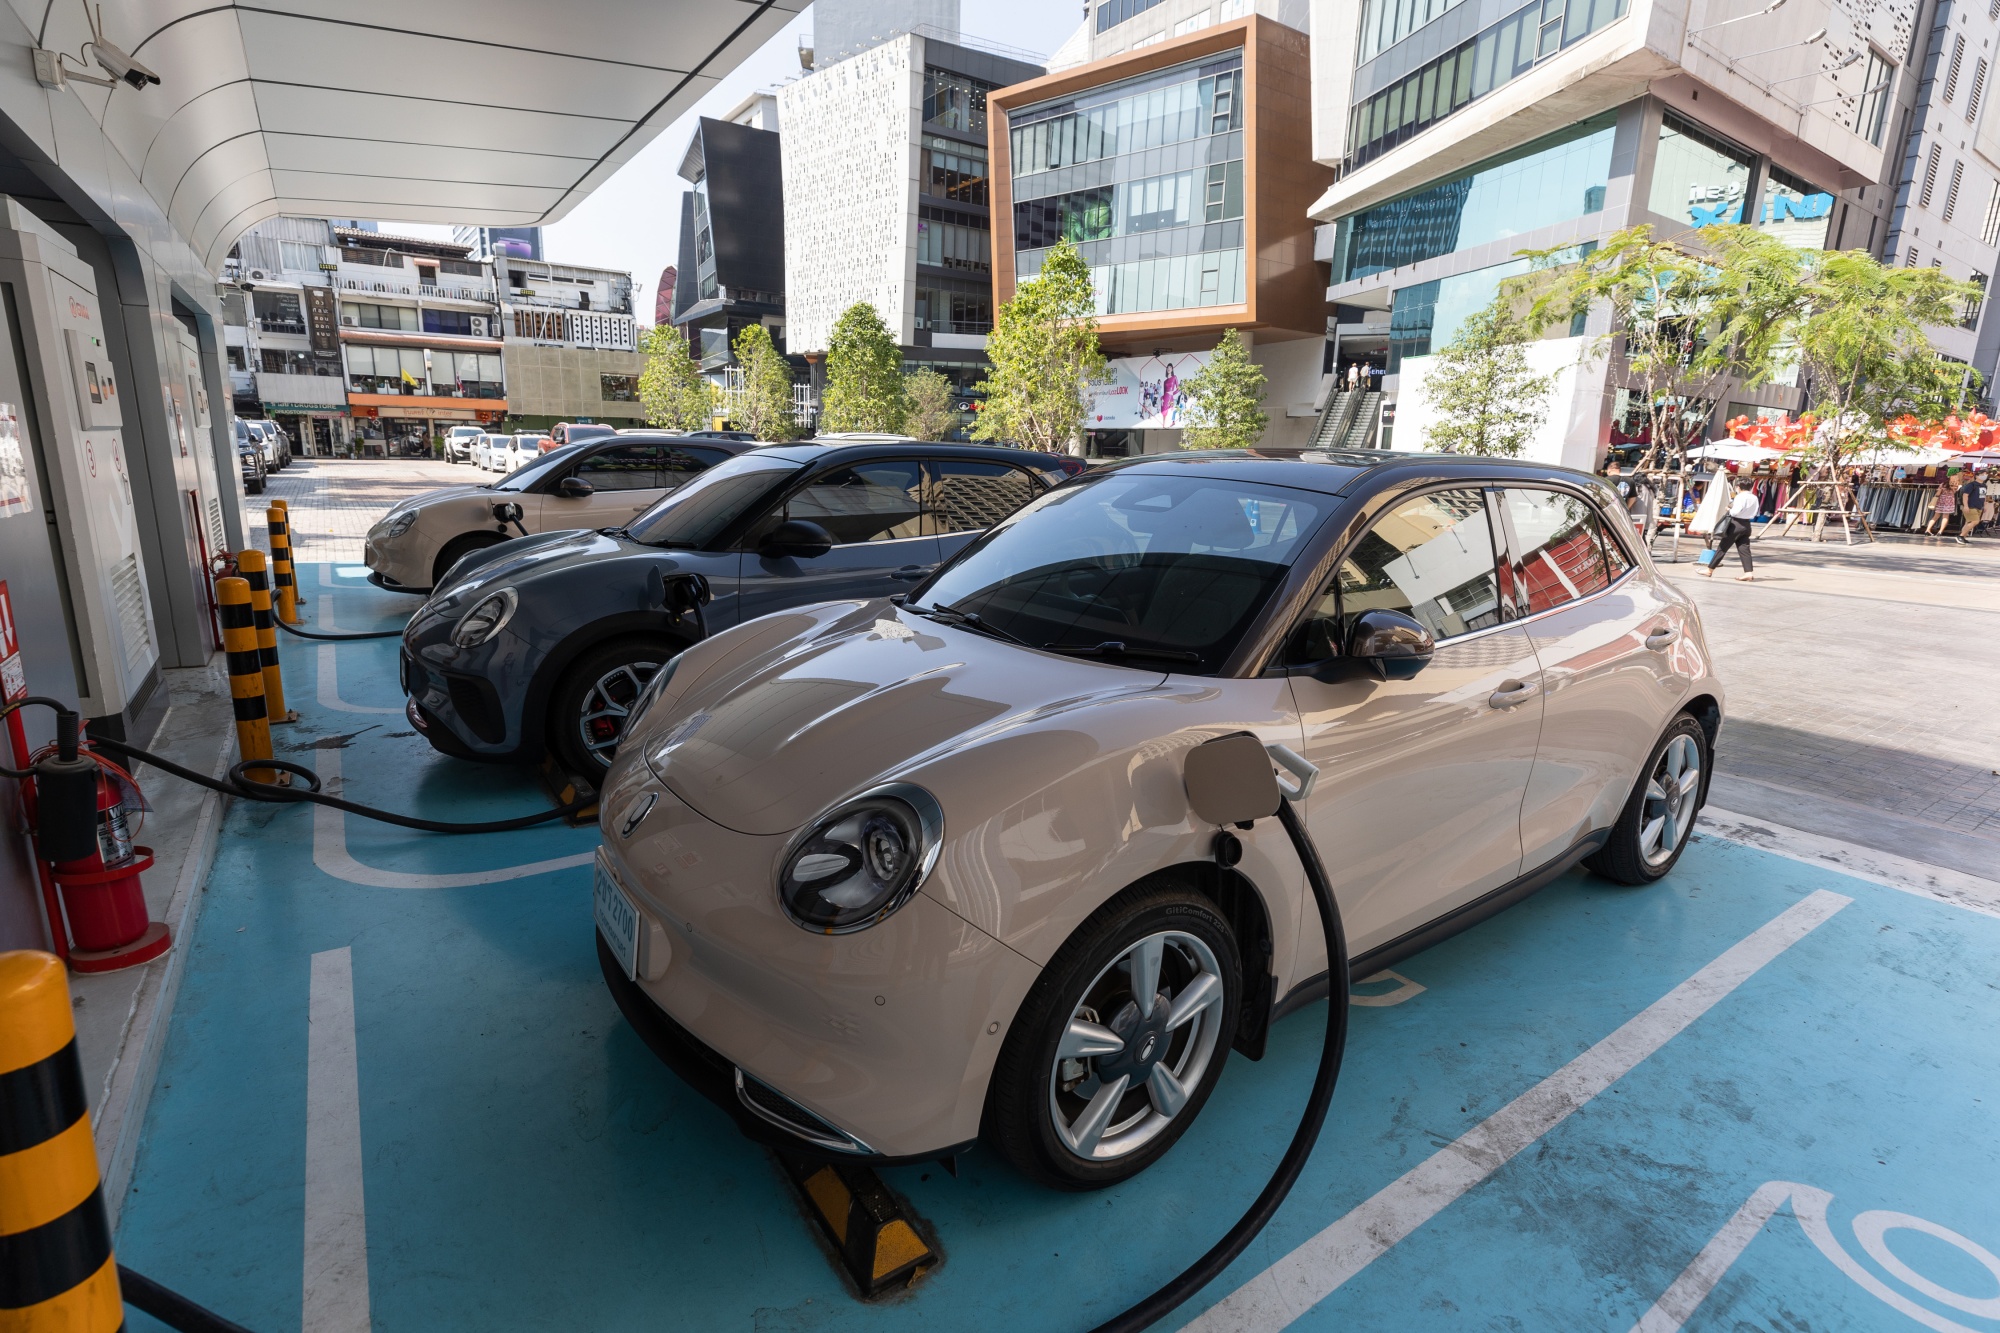 ยอดขายรถยนต์ไฟฟ้าในไทยโต 2 เท่า เปิดตัวรถยนต์ไฟฟ้ารุ่นแรก – รถยนต์ – ข้อมูล รูปภาพ รีวิว รถยนต์ รถจักรยานยนต์ และรถยนต์ไฟฟ้า